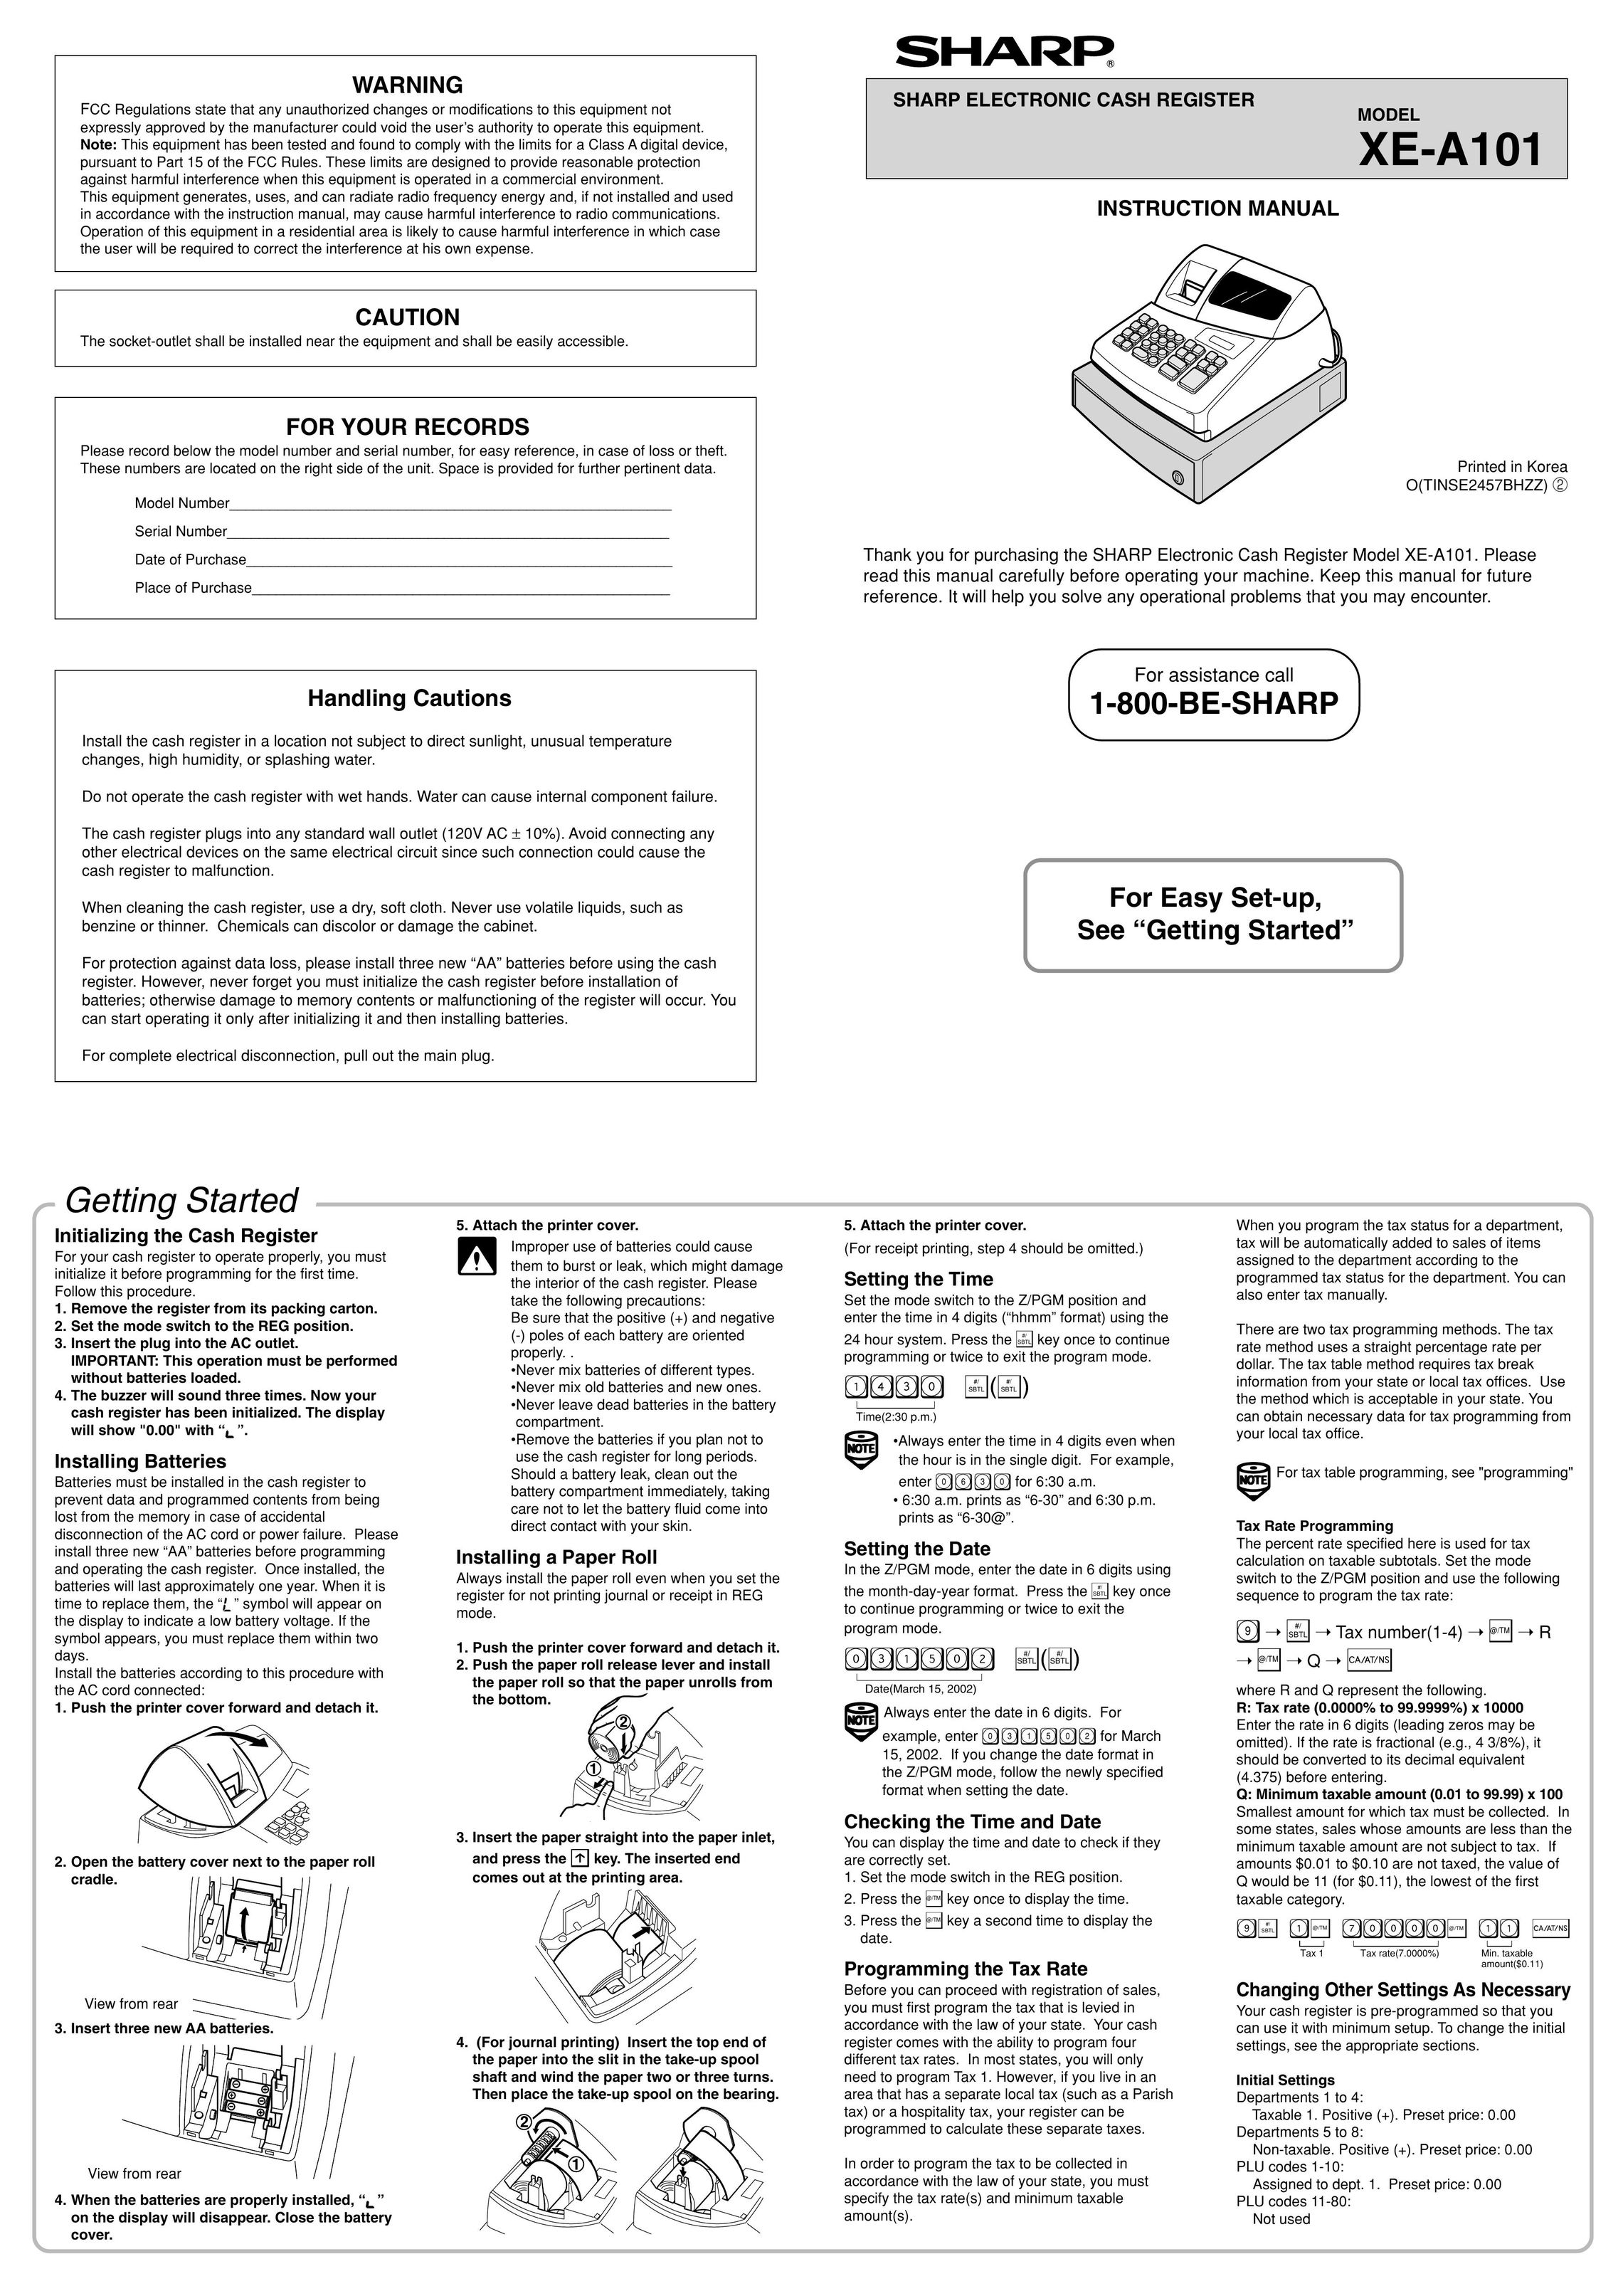 Sharp XE-A101 Cash Register User Manual